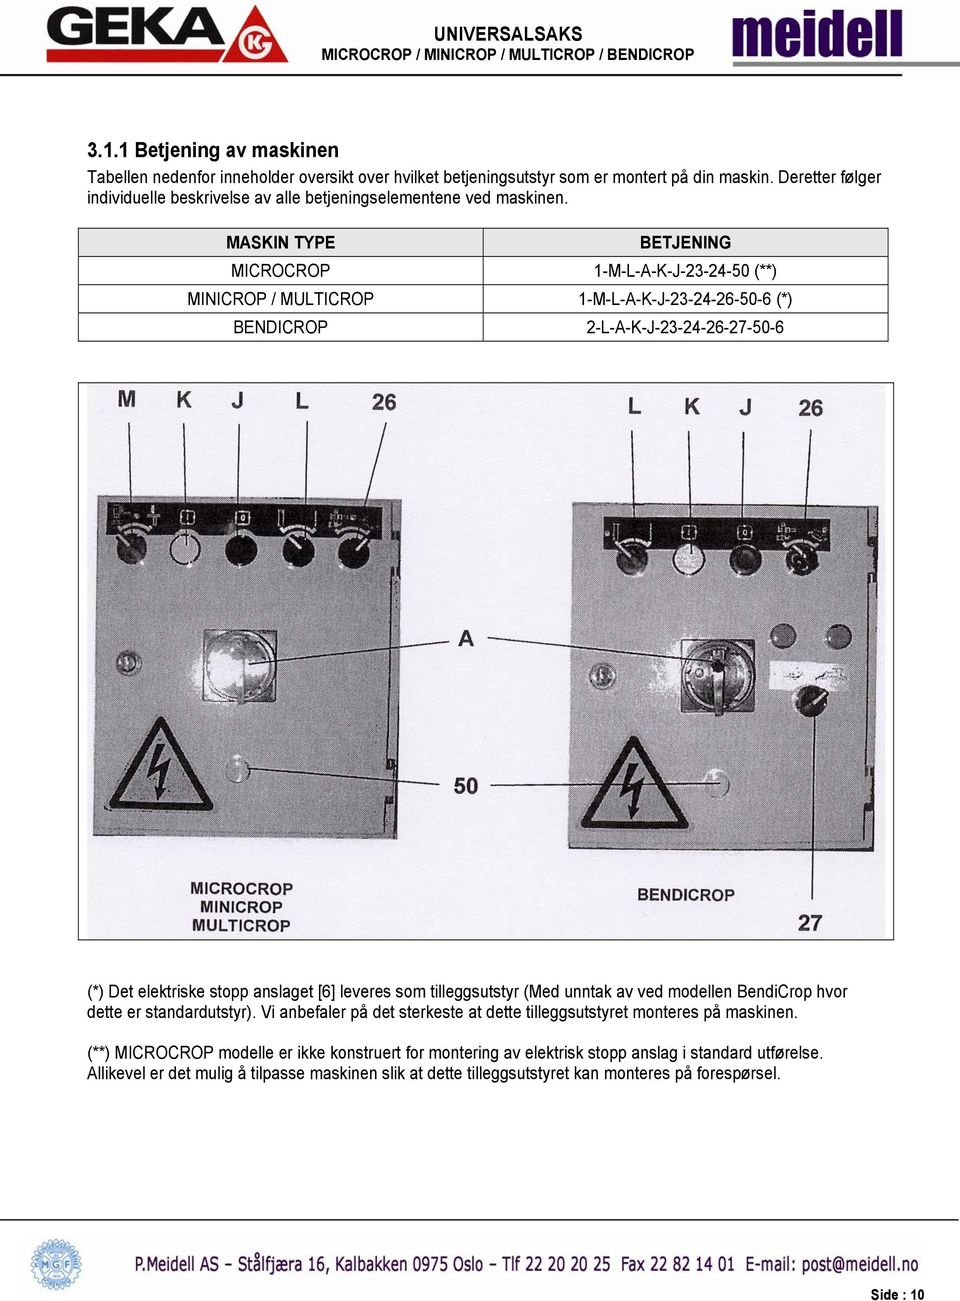 MASKIN TYPE BETJENING MICROCROP 1-M-L-A-K-J-23-24-50 (**) MINICROP / MULTICROP 1-M-L-A-K-J-23-24-26-50-6 (*) BENDICROP 2-L-A-K-J-23-24-26-27-50-6 (*) Det elektriske stopp anslaget [6] leveres som